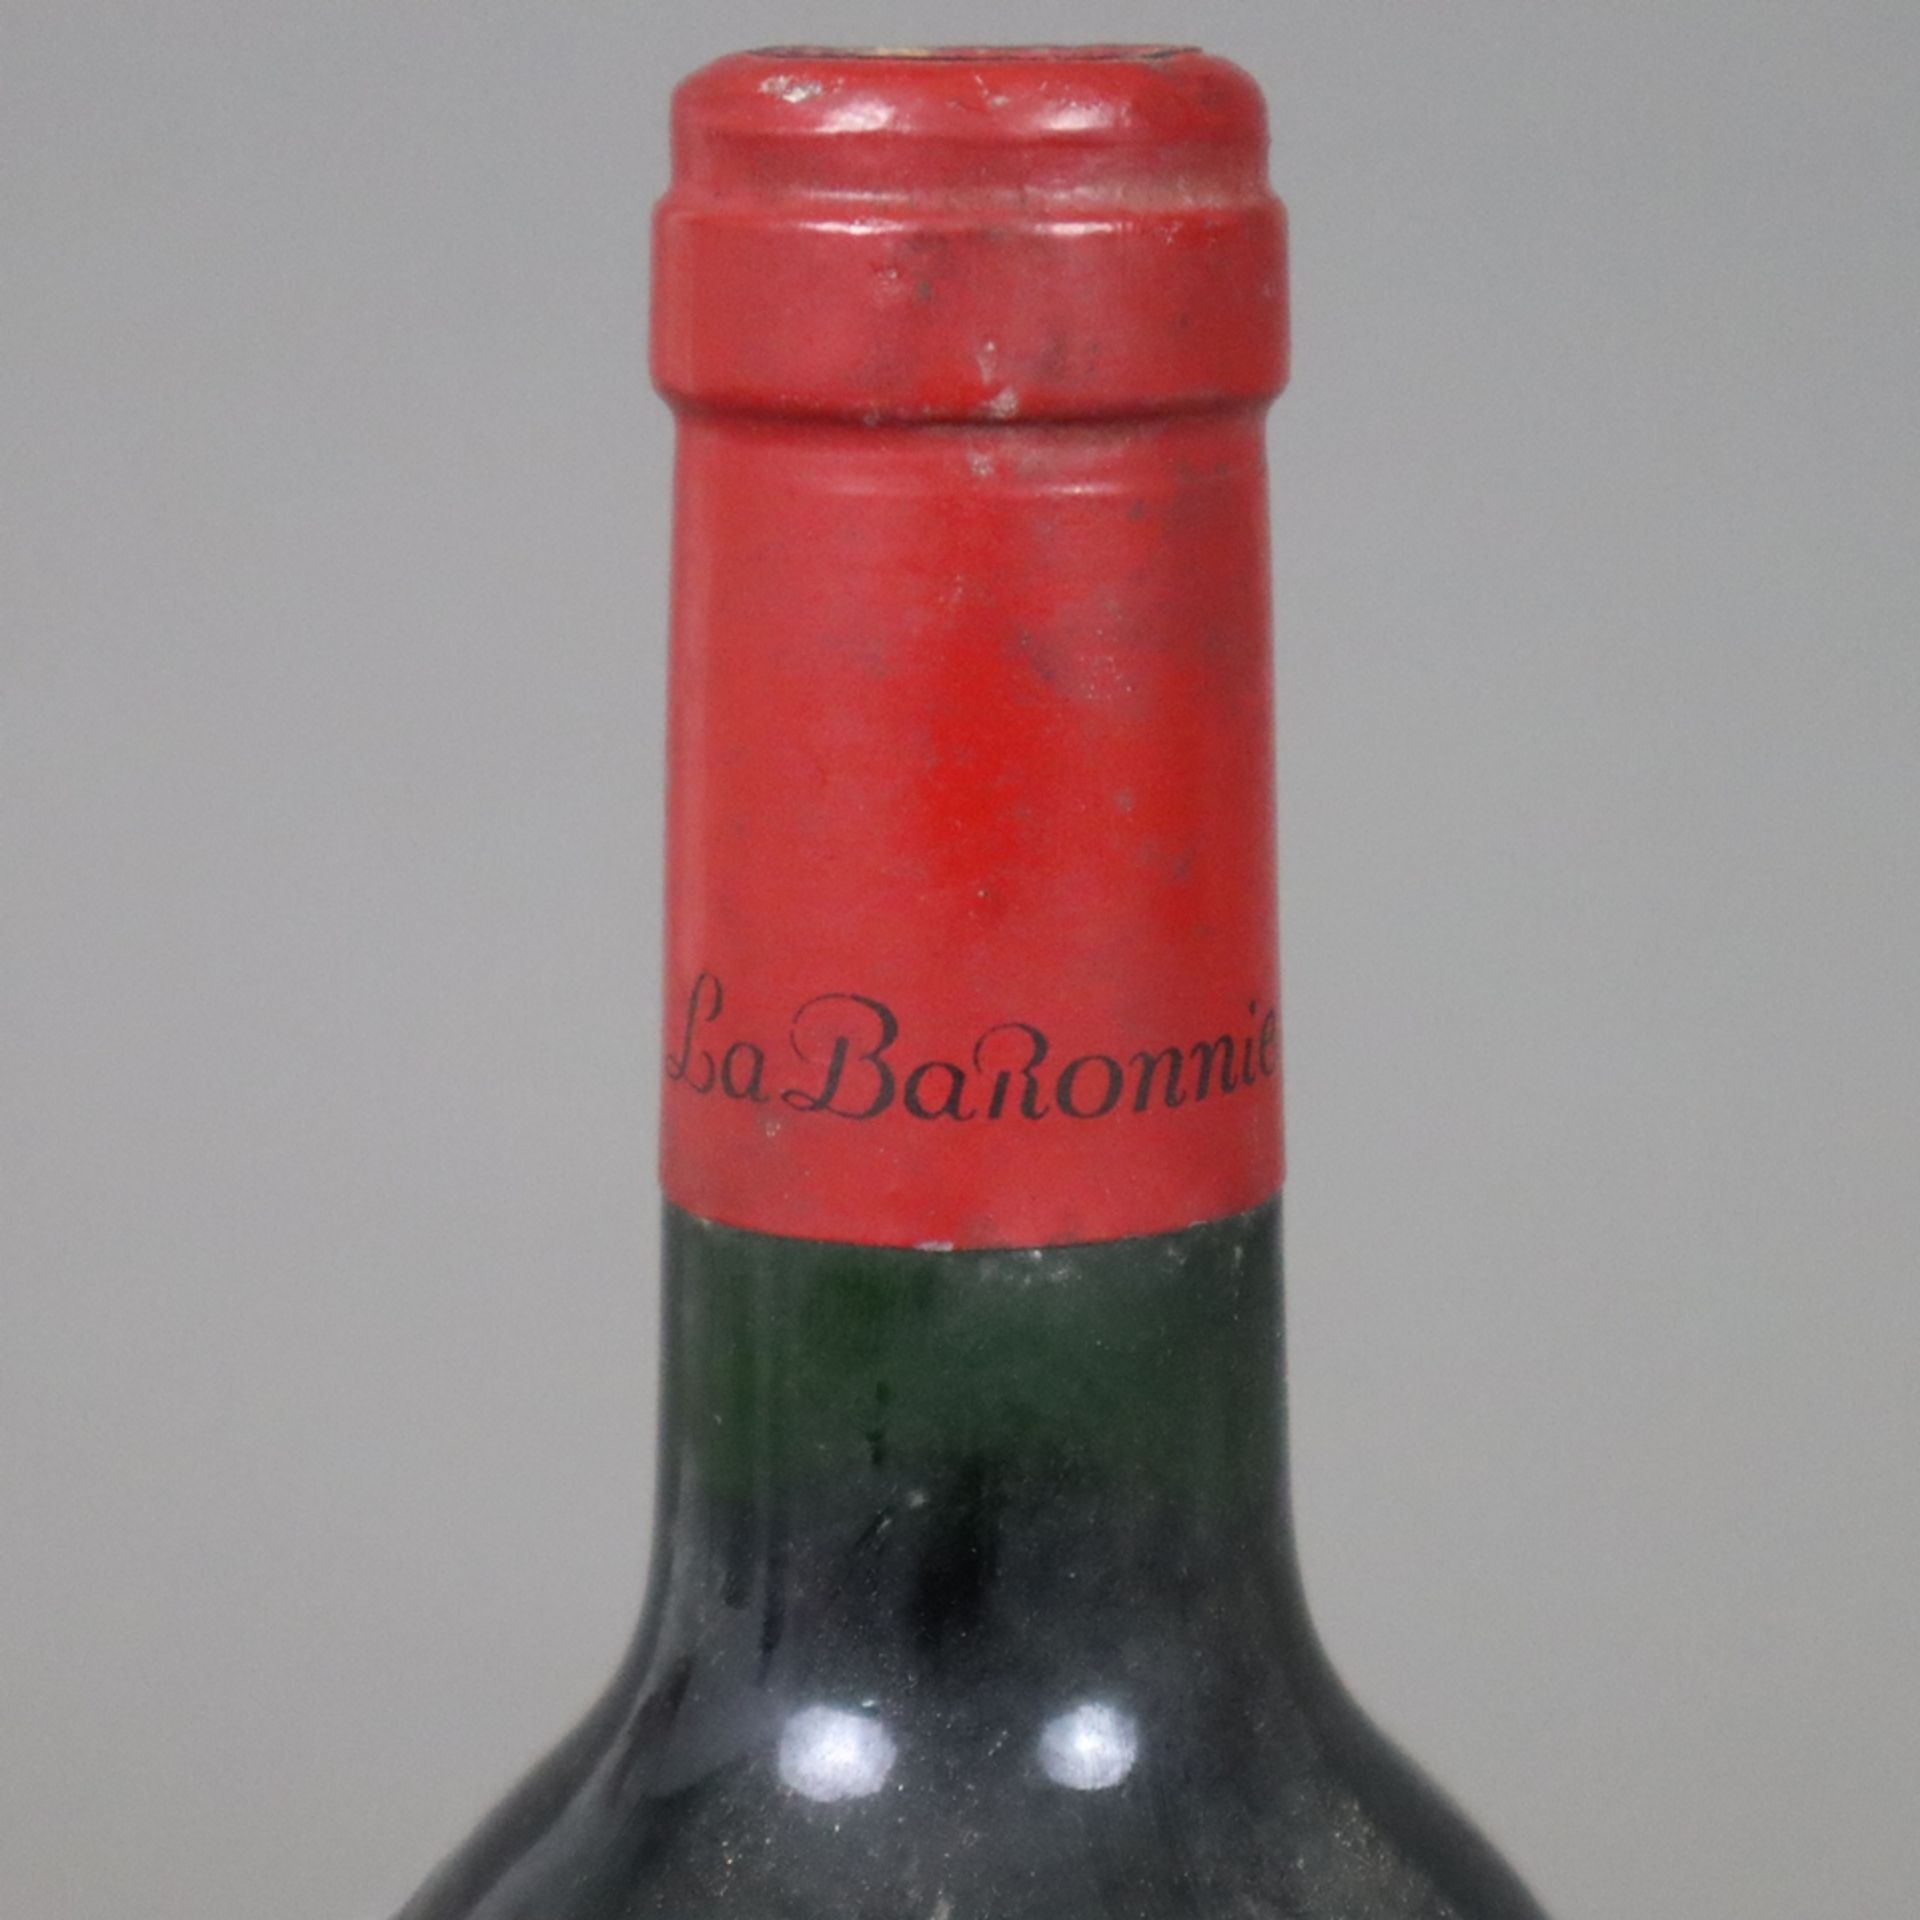 Wein - 1986 Baron Philippe de Rothschild Mouton Cadet, France, 0,7 L, Flasche verschmutzt, Etikett  - Bild 3 aus 6